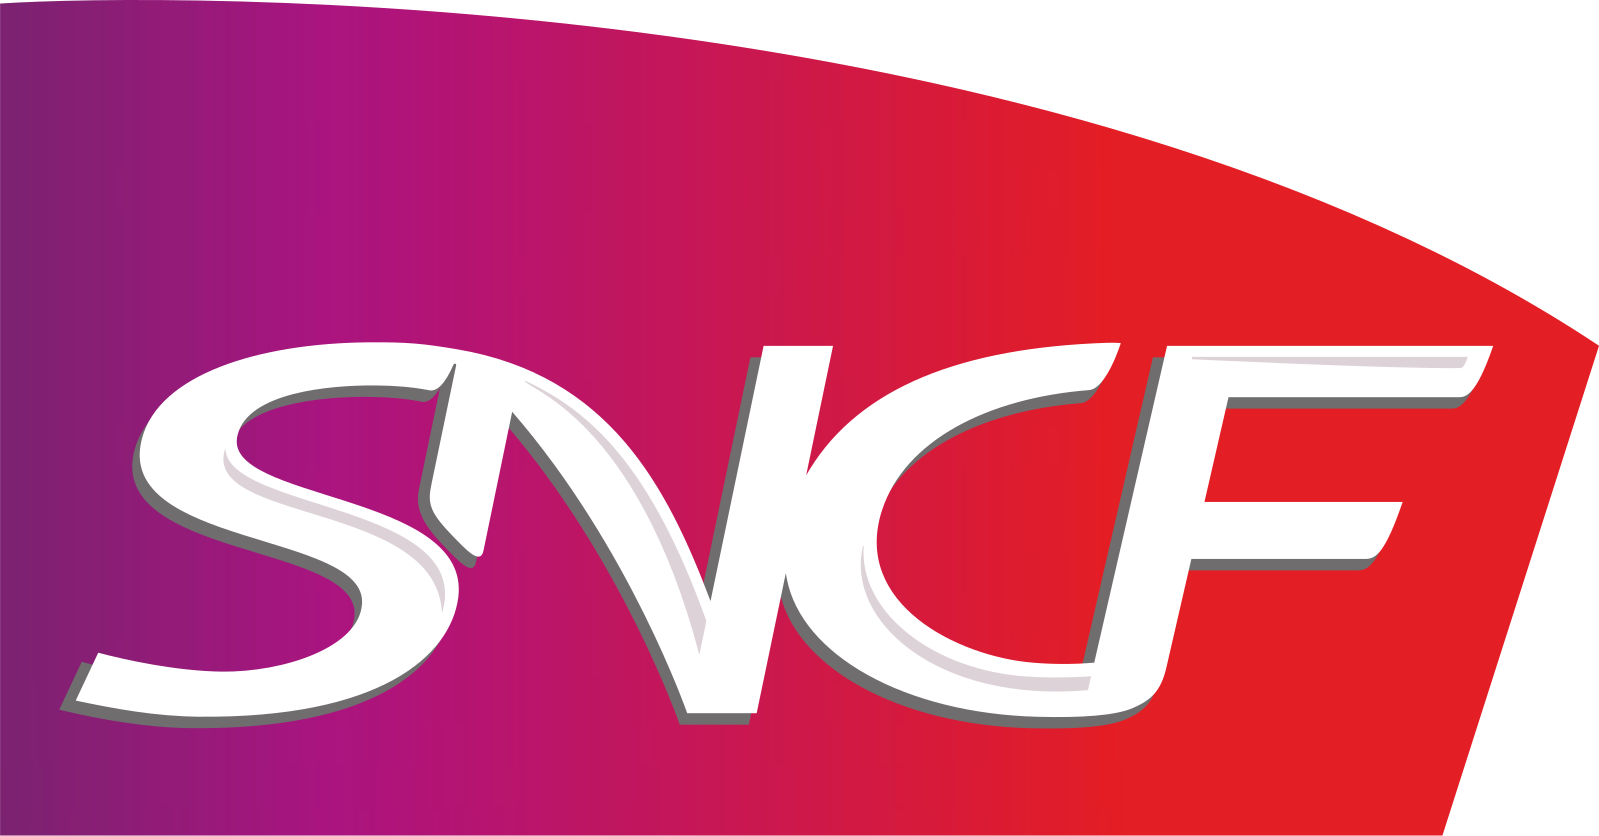 1599px-Logo_SNCF_(2005).svg.png